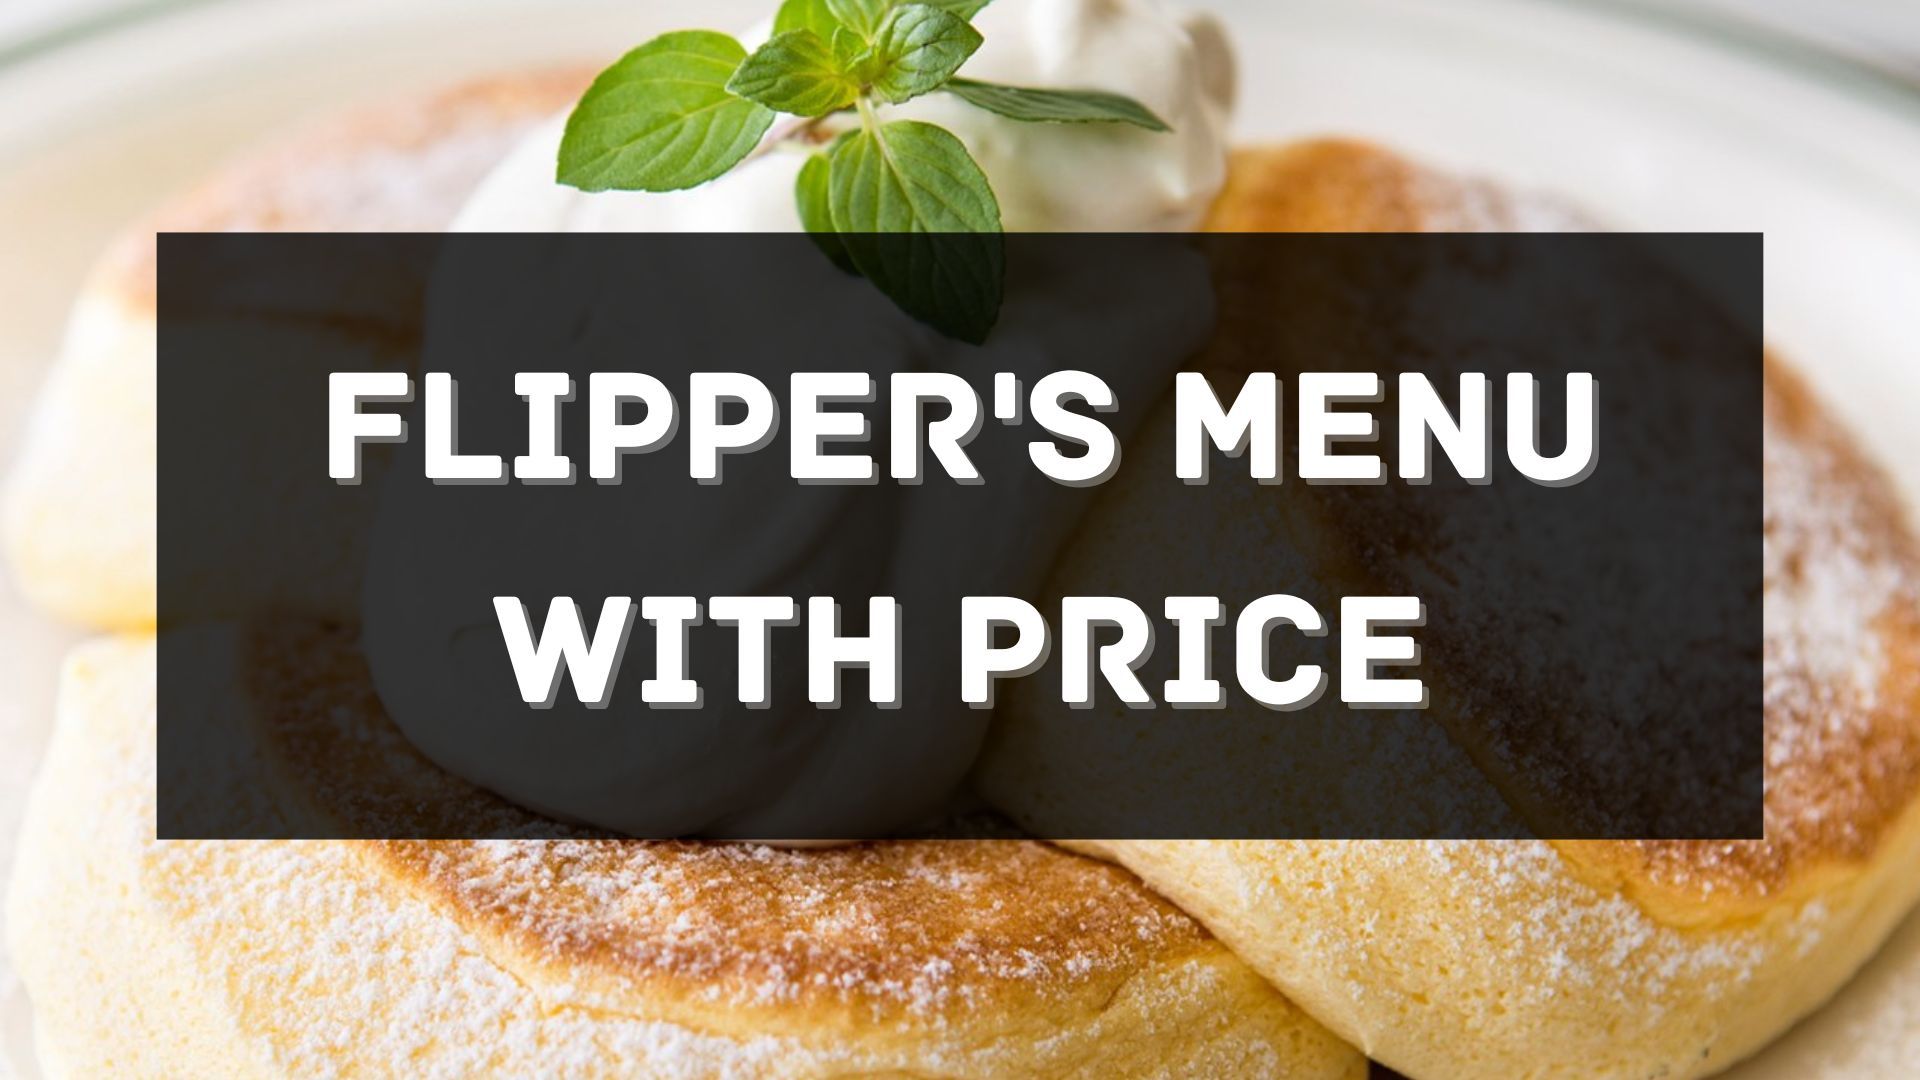 flipper's menu prices philippines